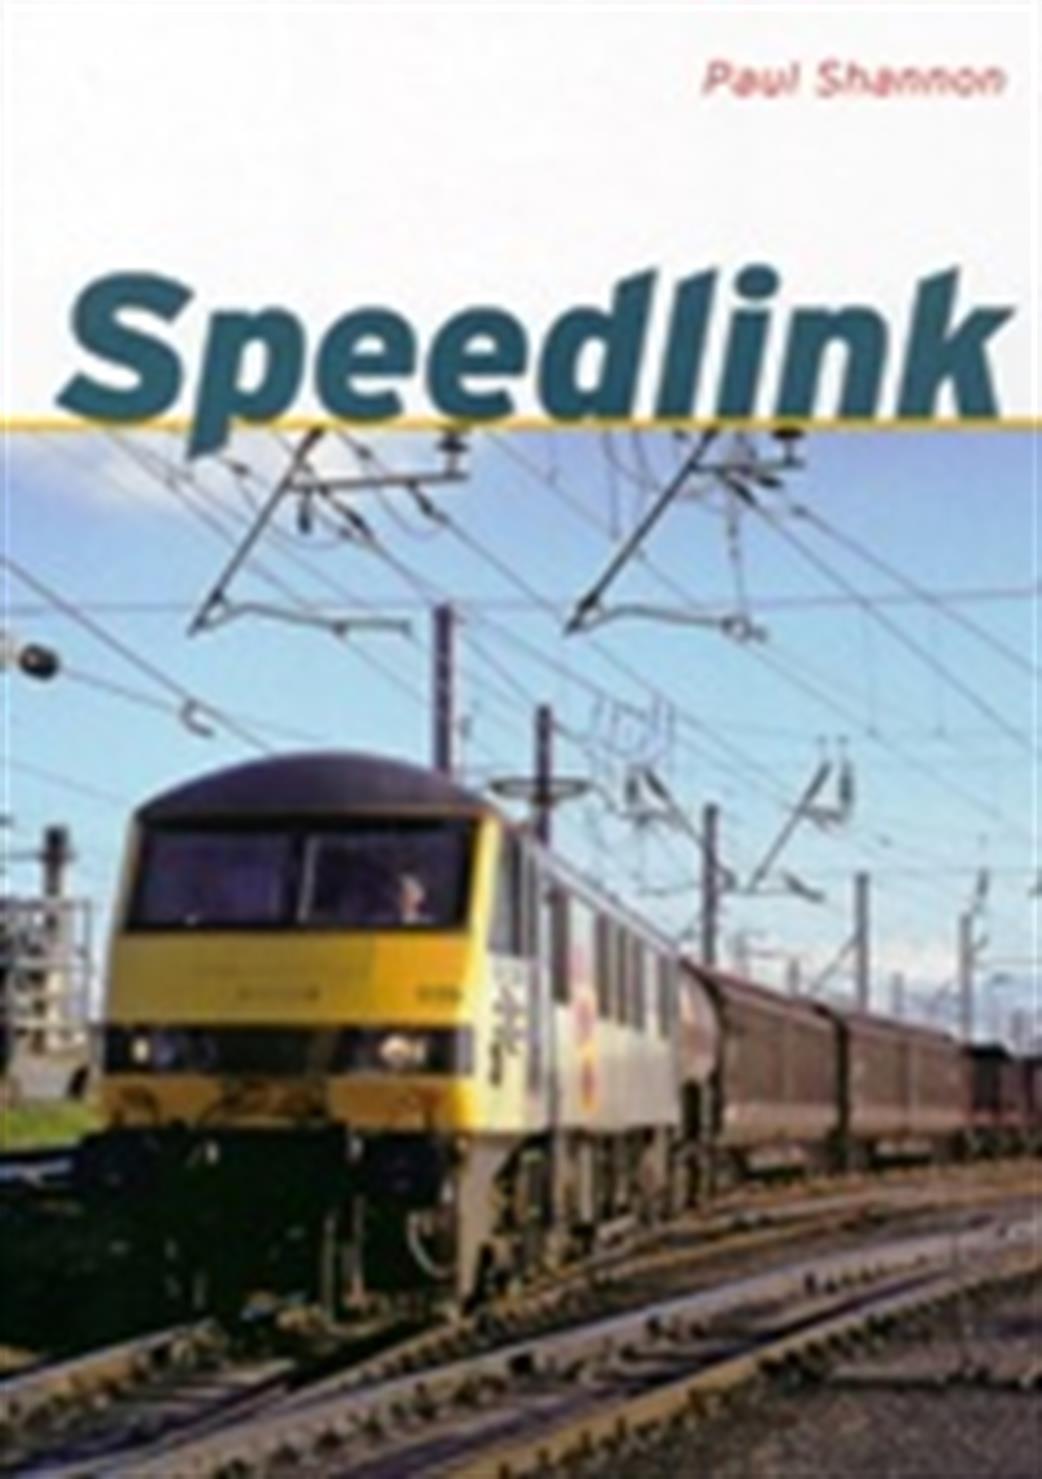 Ian Allan Publishing  9780711036970 Speedlink by Paul Shannon